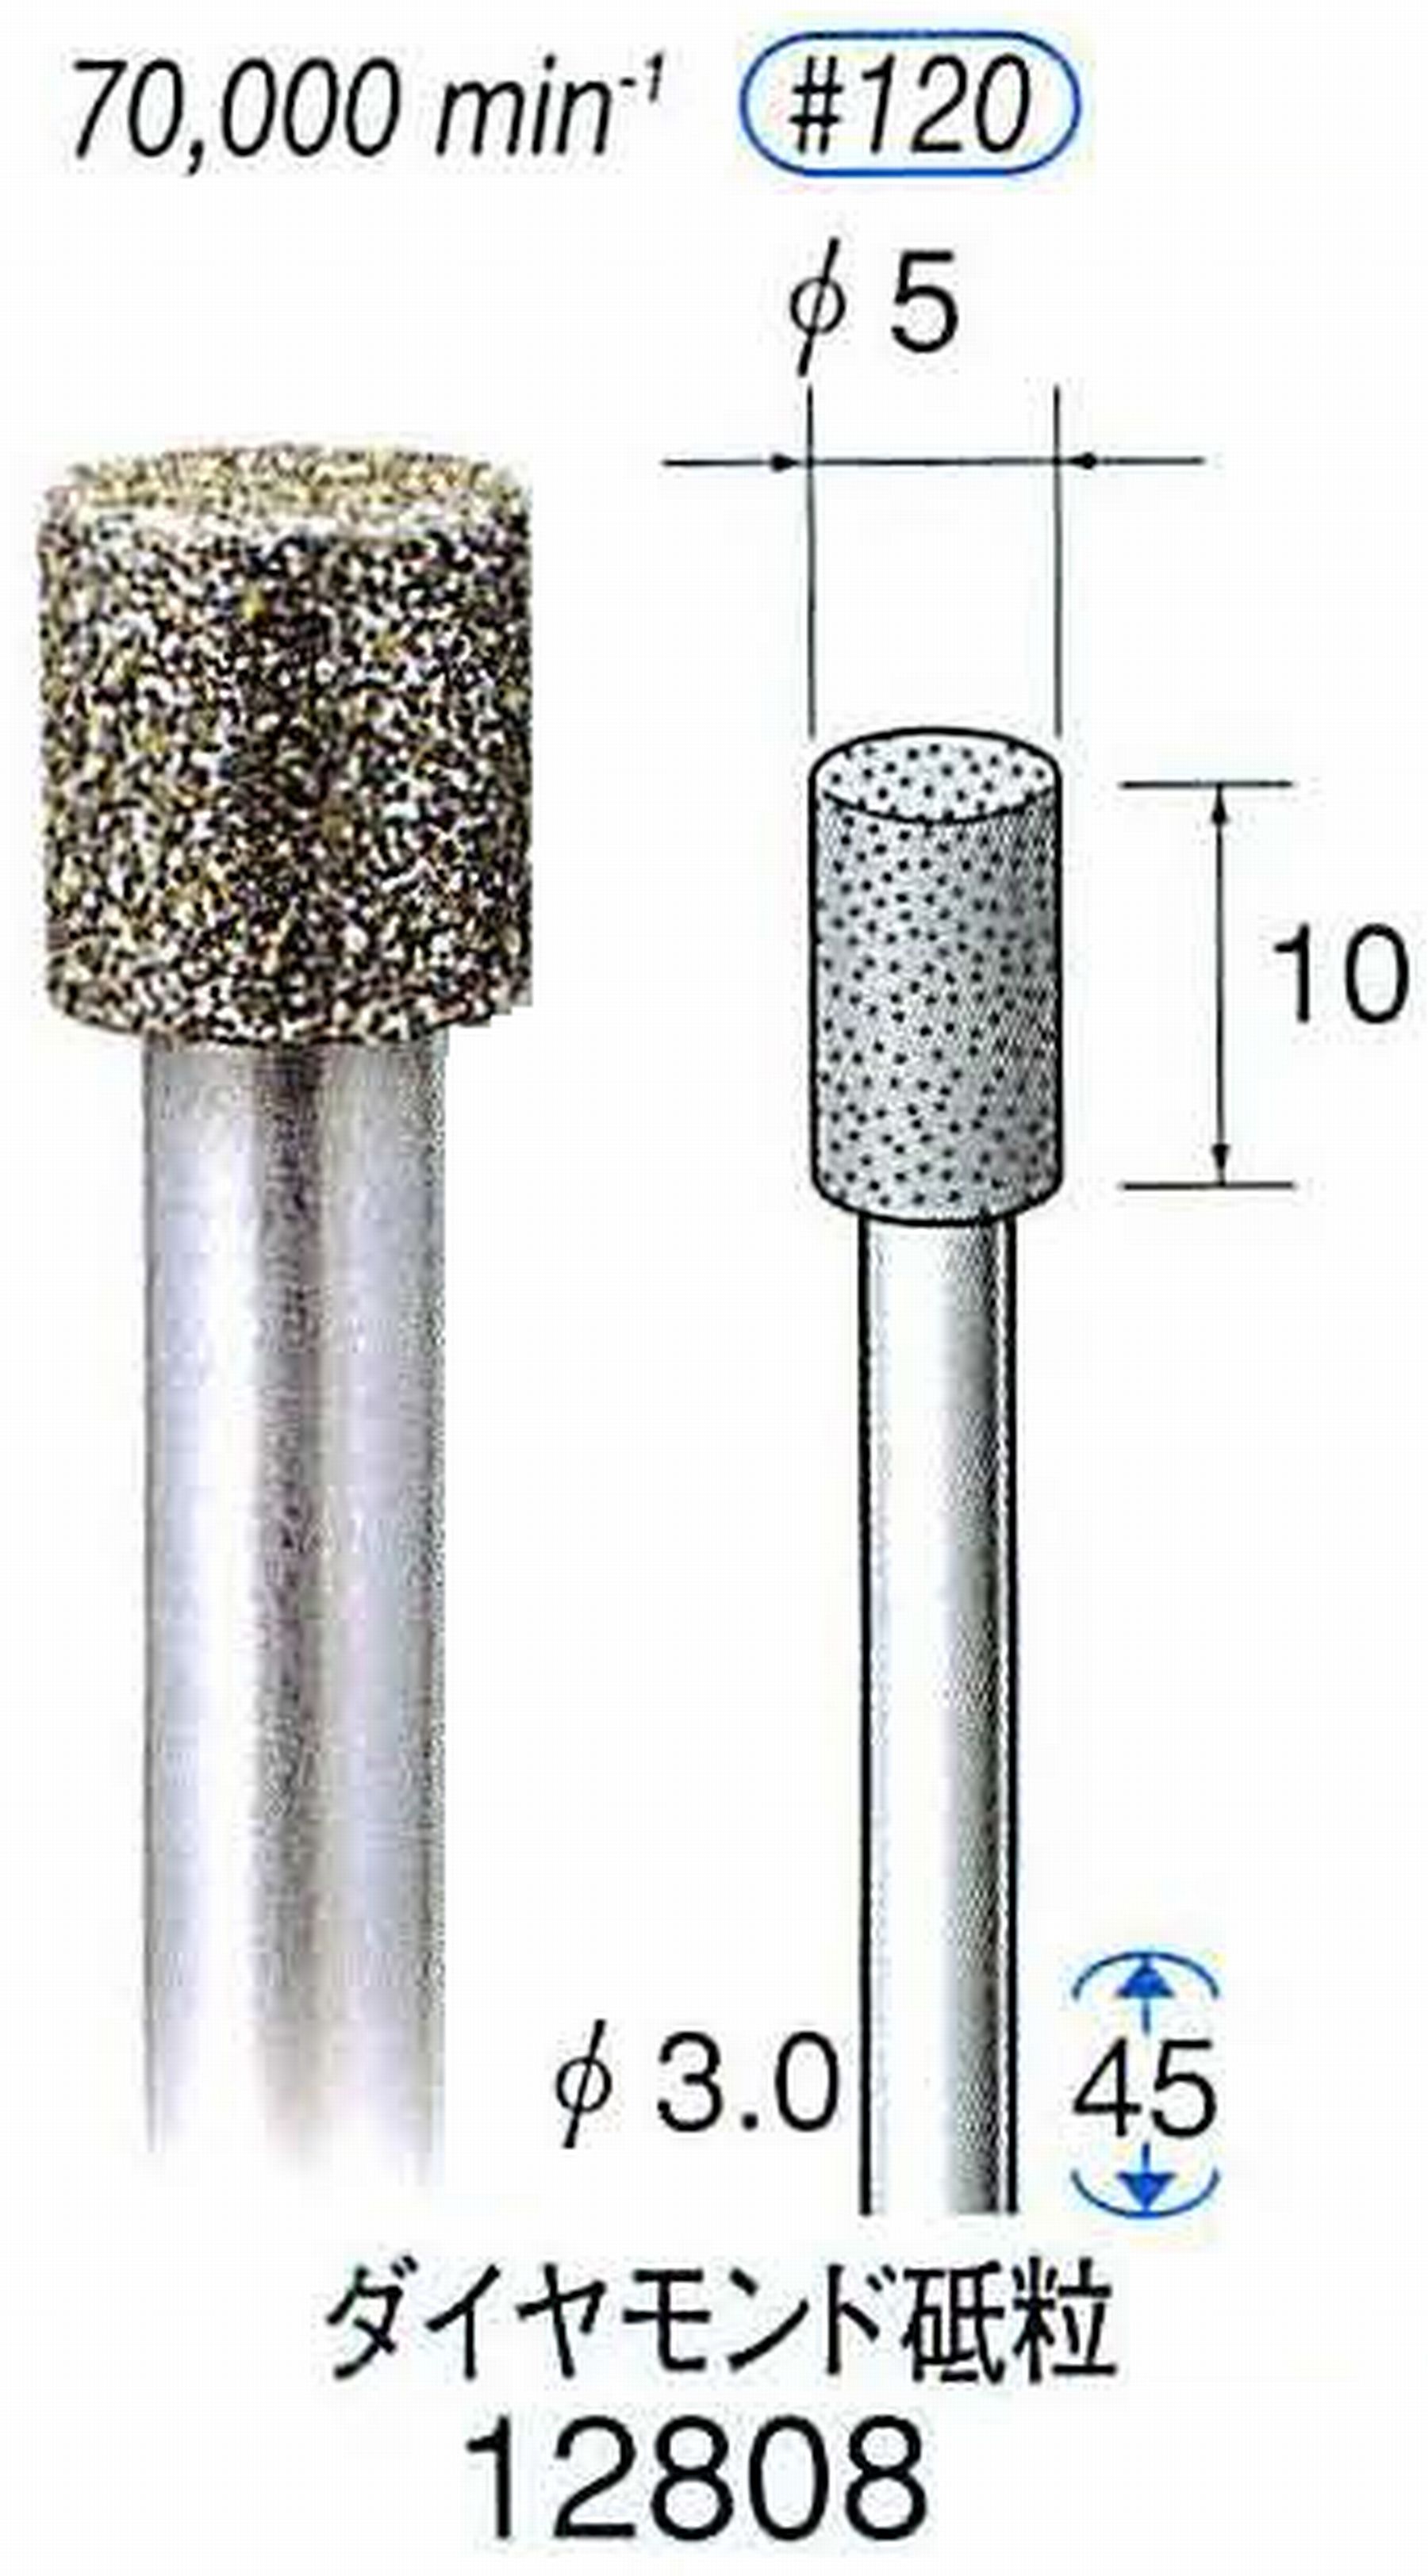 ナカニシ/NAKANISHI クラフト・ホビー用ダイヤモンドバー ダイヤモンド砥粒 軸径(シャンク)φ3.0mm 12808